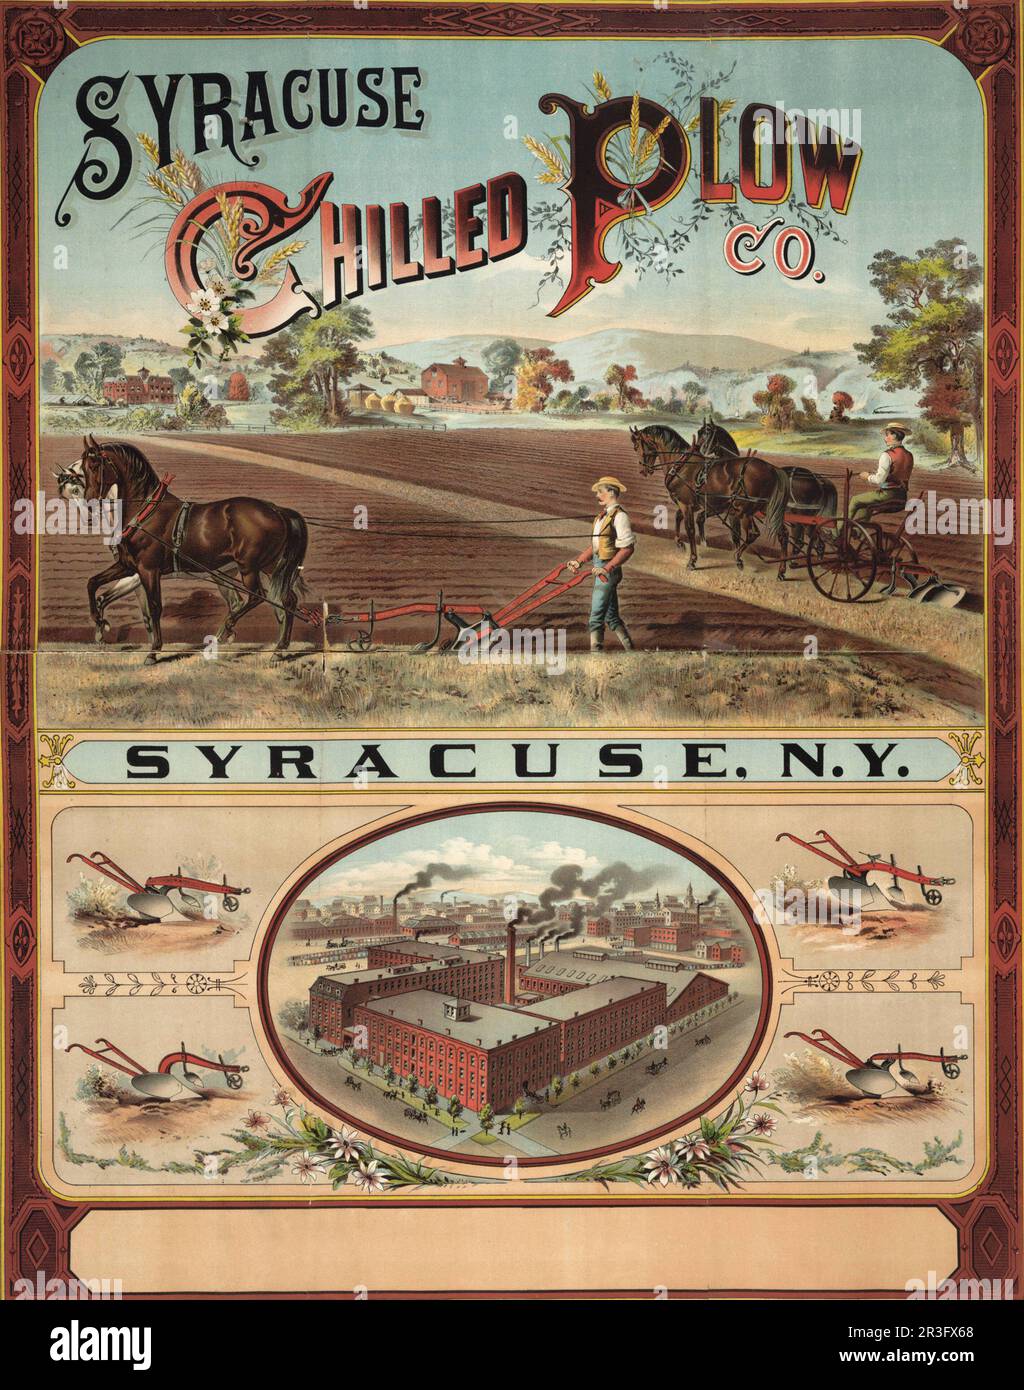 Pubblicità vintage per Syracuse Chilled Plow Company. Foto Stock